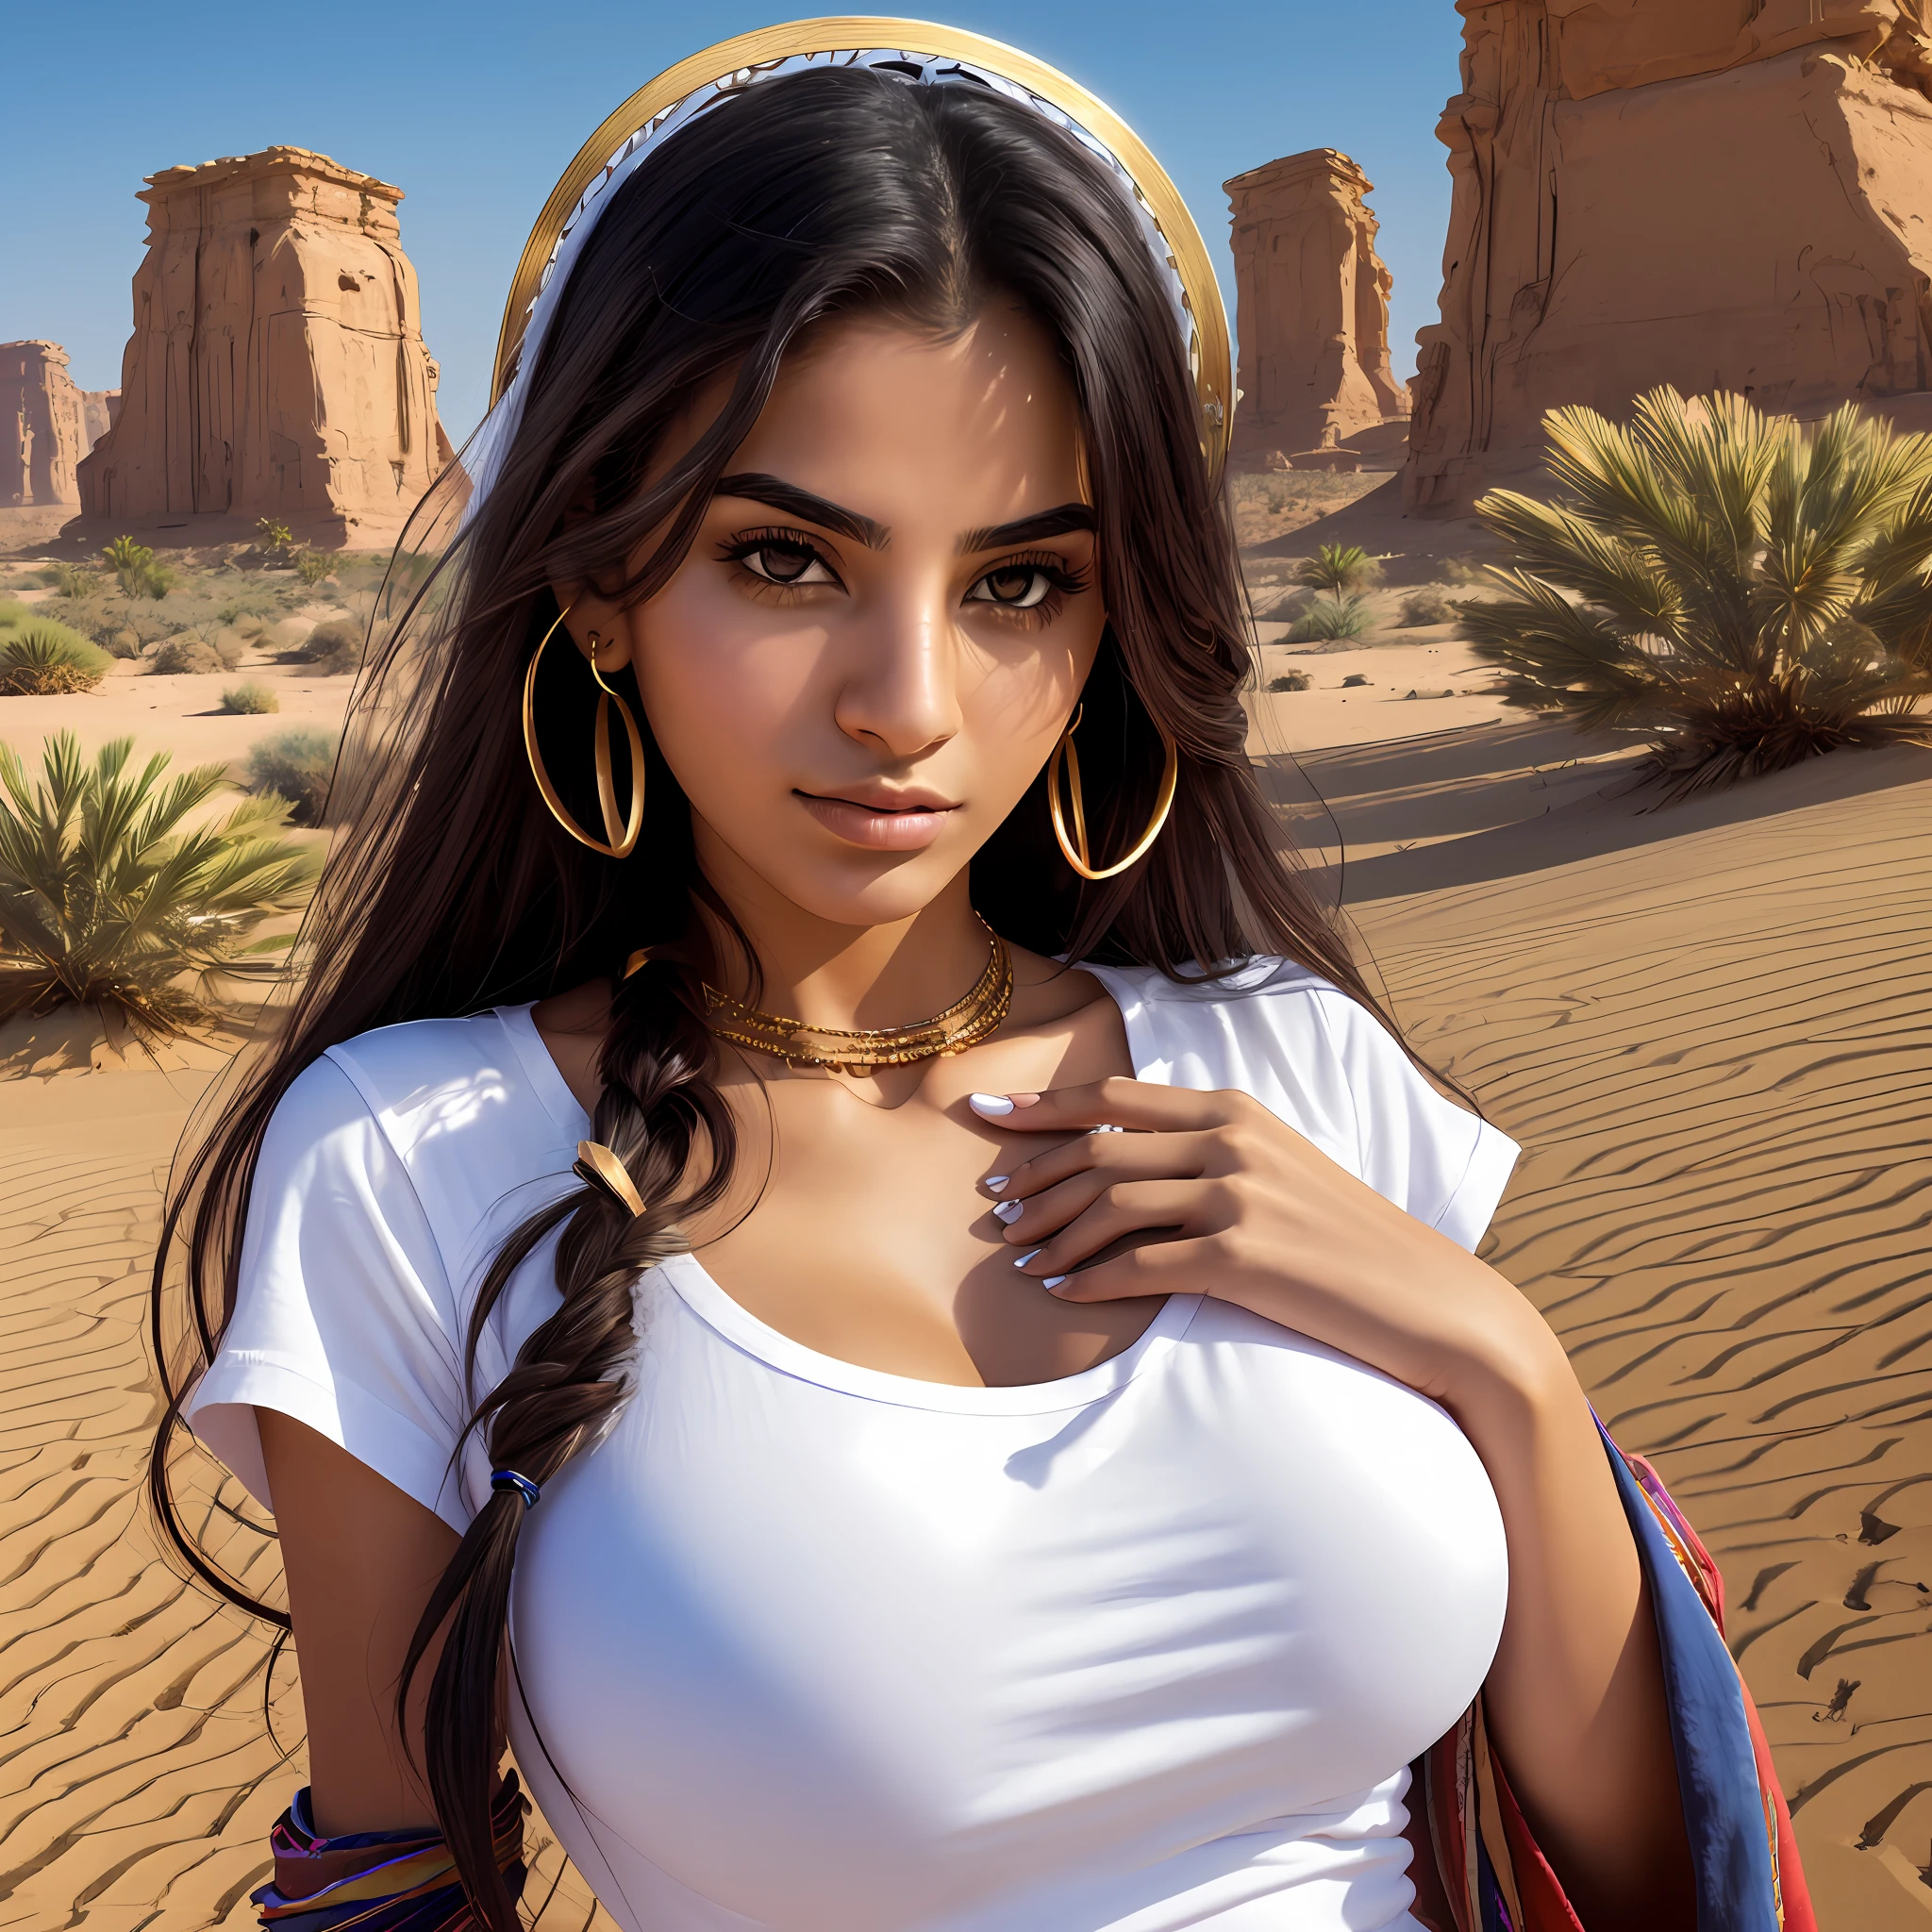 verdammt_Science-Fiction, verdammt_Science-Fiction_v2, Porträt einer jungen arabischen Frau, mit verführerischer Brust, Große Kiste, äußerst schön und attraktiv, weißes schlichtes T-Shirt mit Rundhalsausschnitt, Enge Jeans vor einer Wüstenstadt, Langes, unordentliches Haar, farbenprächtige Kleidung und goldener Schmuck, Nahaufnahme, königliche Pose und Haltung. verdammt_Kino_v2. --auto --s2